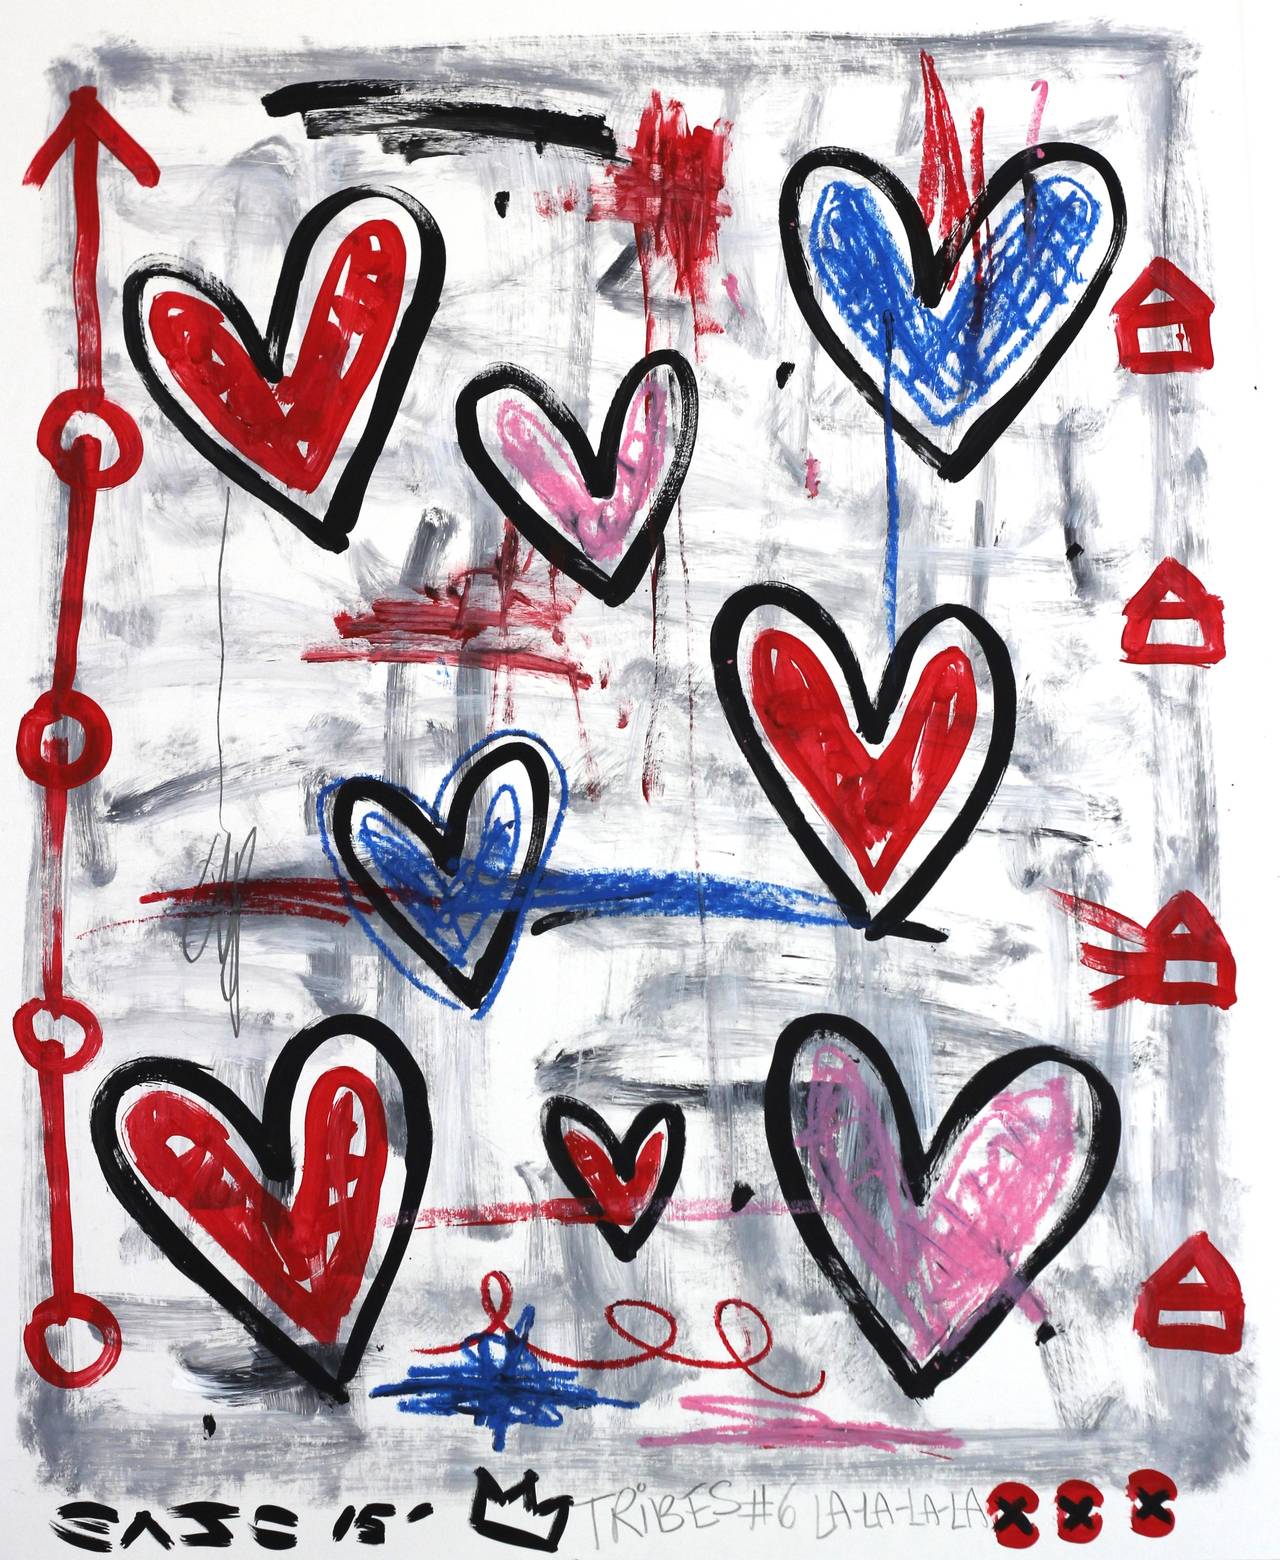 Spring Hearts - Mixed Media Art by Gary John